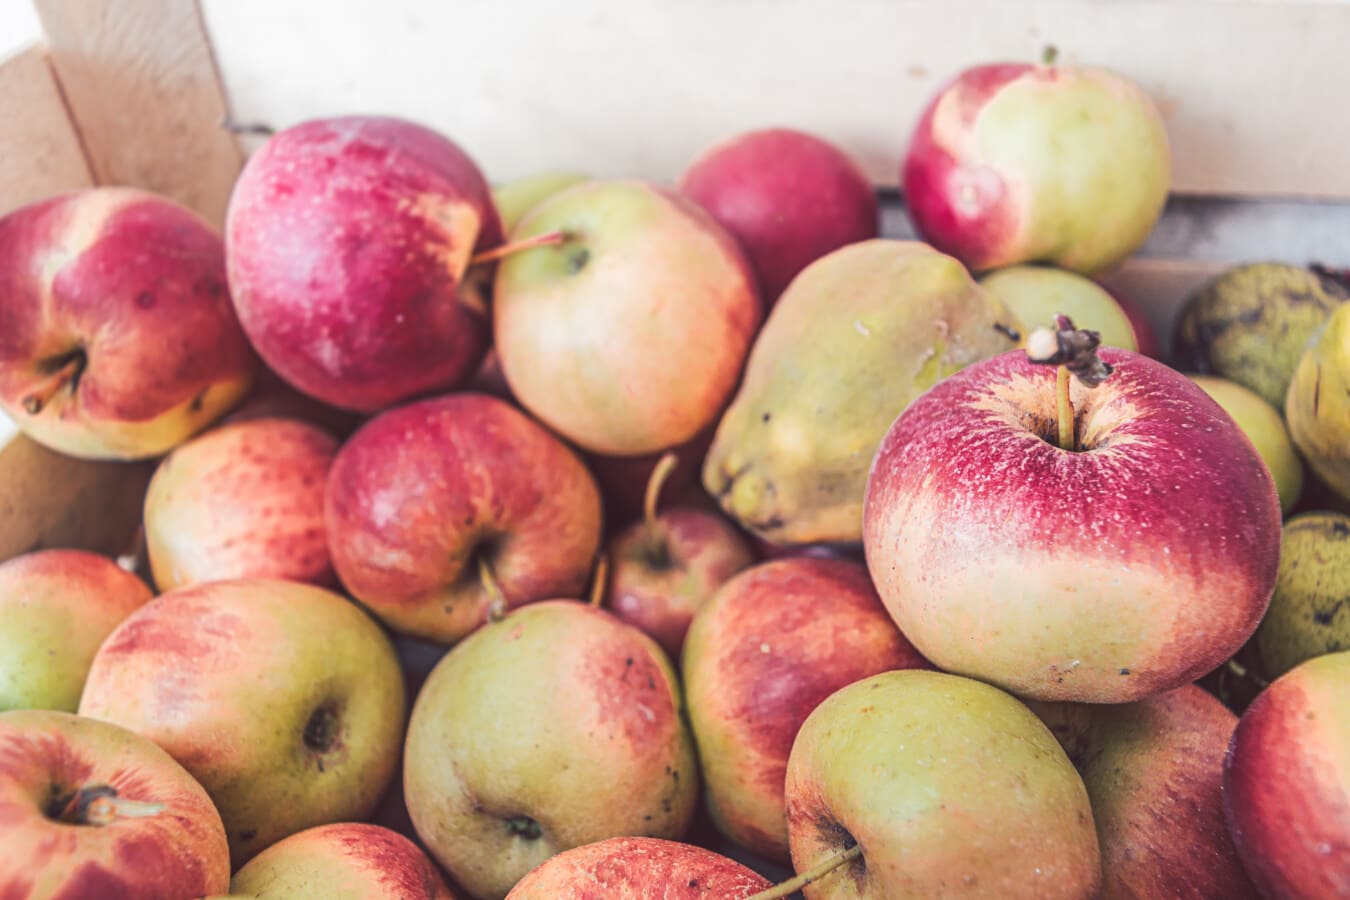 βιολογικά, τα μήλα, φρούτα, ώριμα φρούτα, προϊόντα, Γεωργία, φρέσκο, νόστιμα, μήλο, υγιεινή